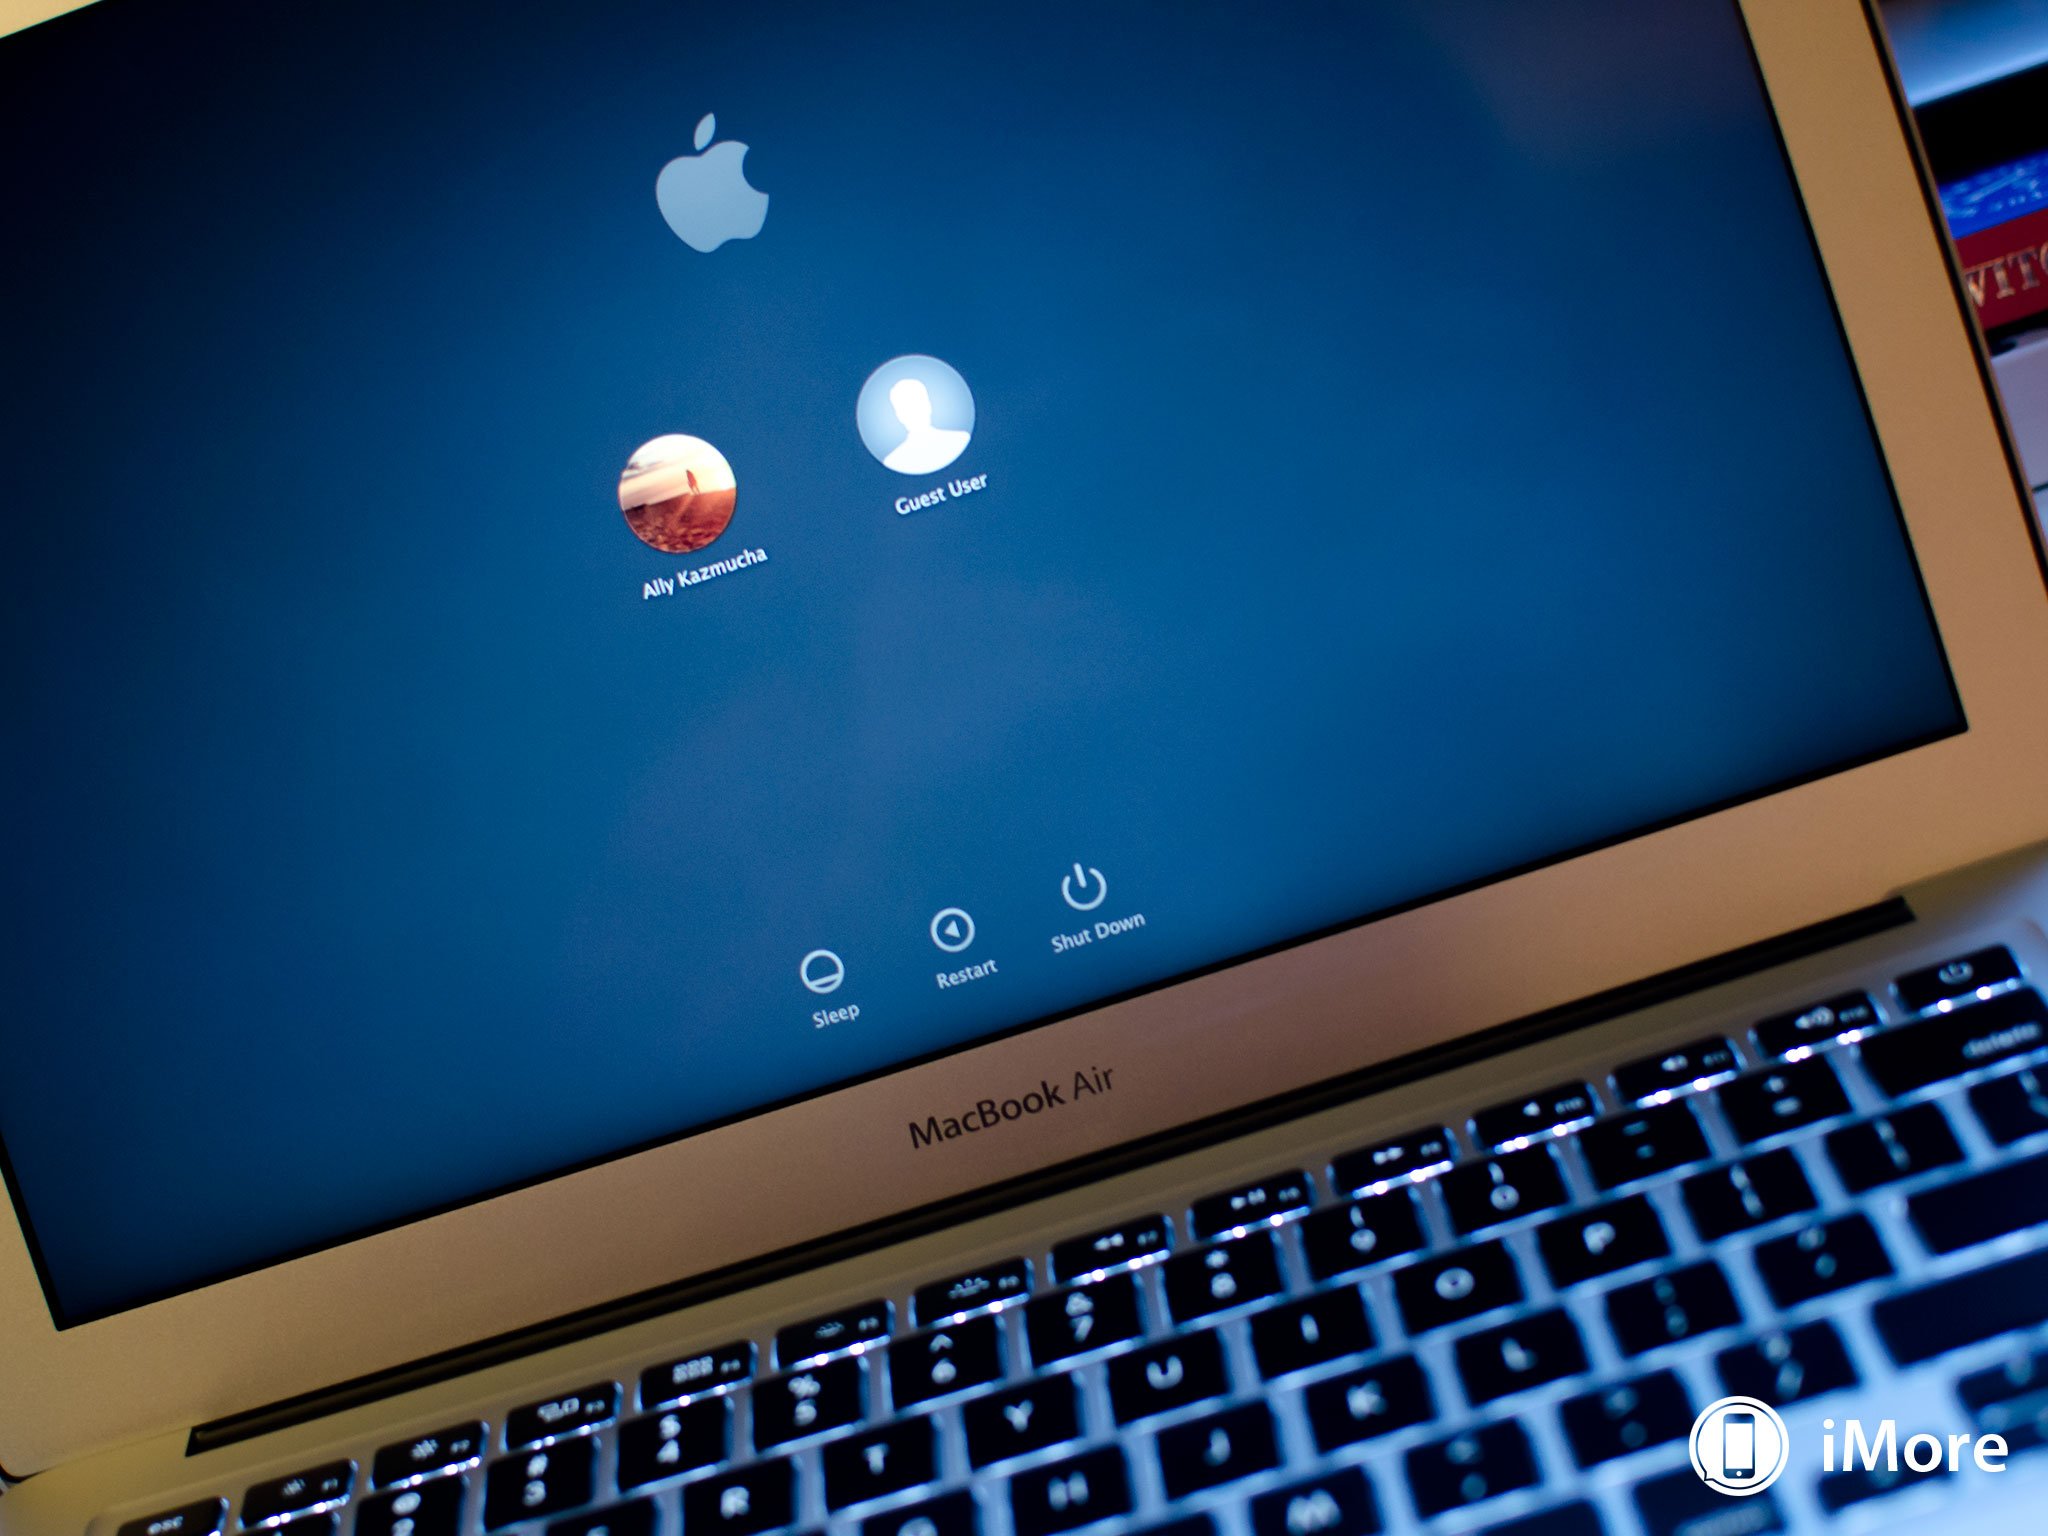 Apple released OS X 10.9.4 with Wi-Fi fixes, Safari 7.0.5